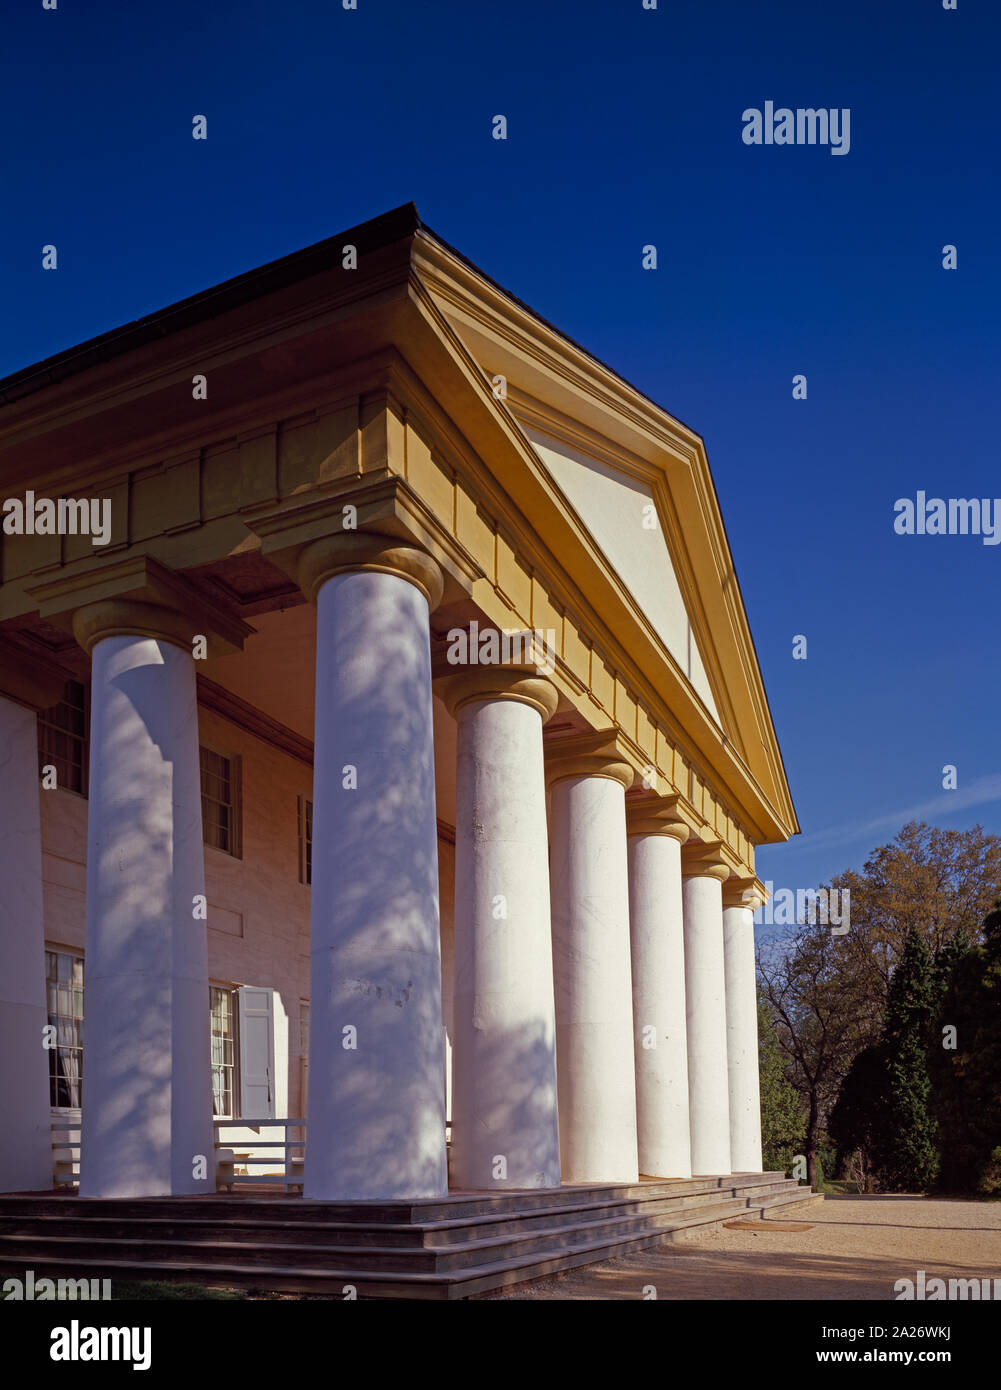 Portikus von Arlington House, Robert E. Lee's Mansion über Begründung, wurde den nationalen Friedhof von Arlington, Arlington, Virginia Stockfoto